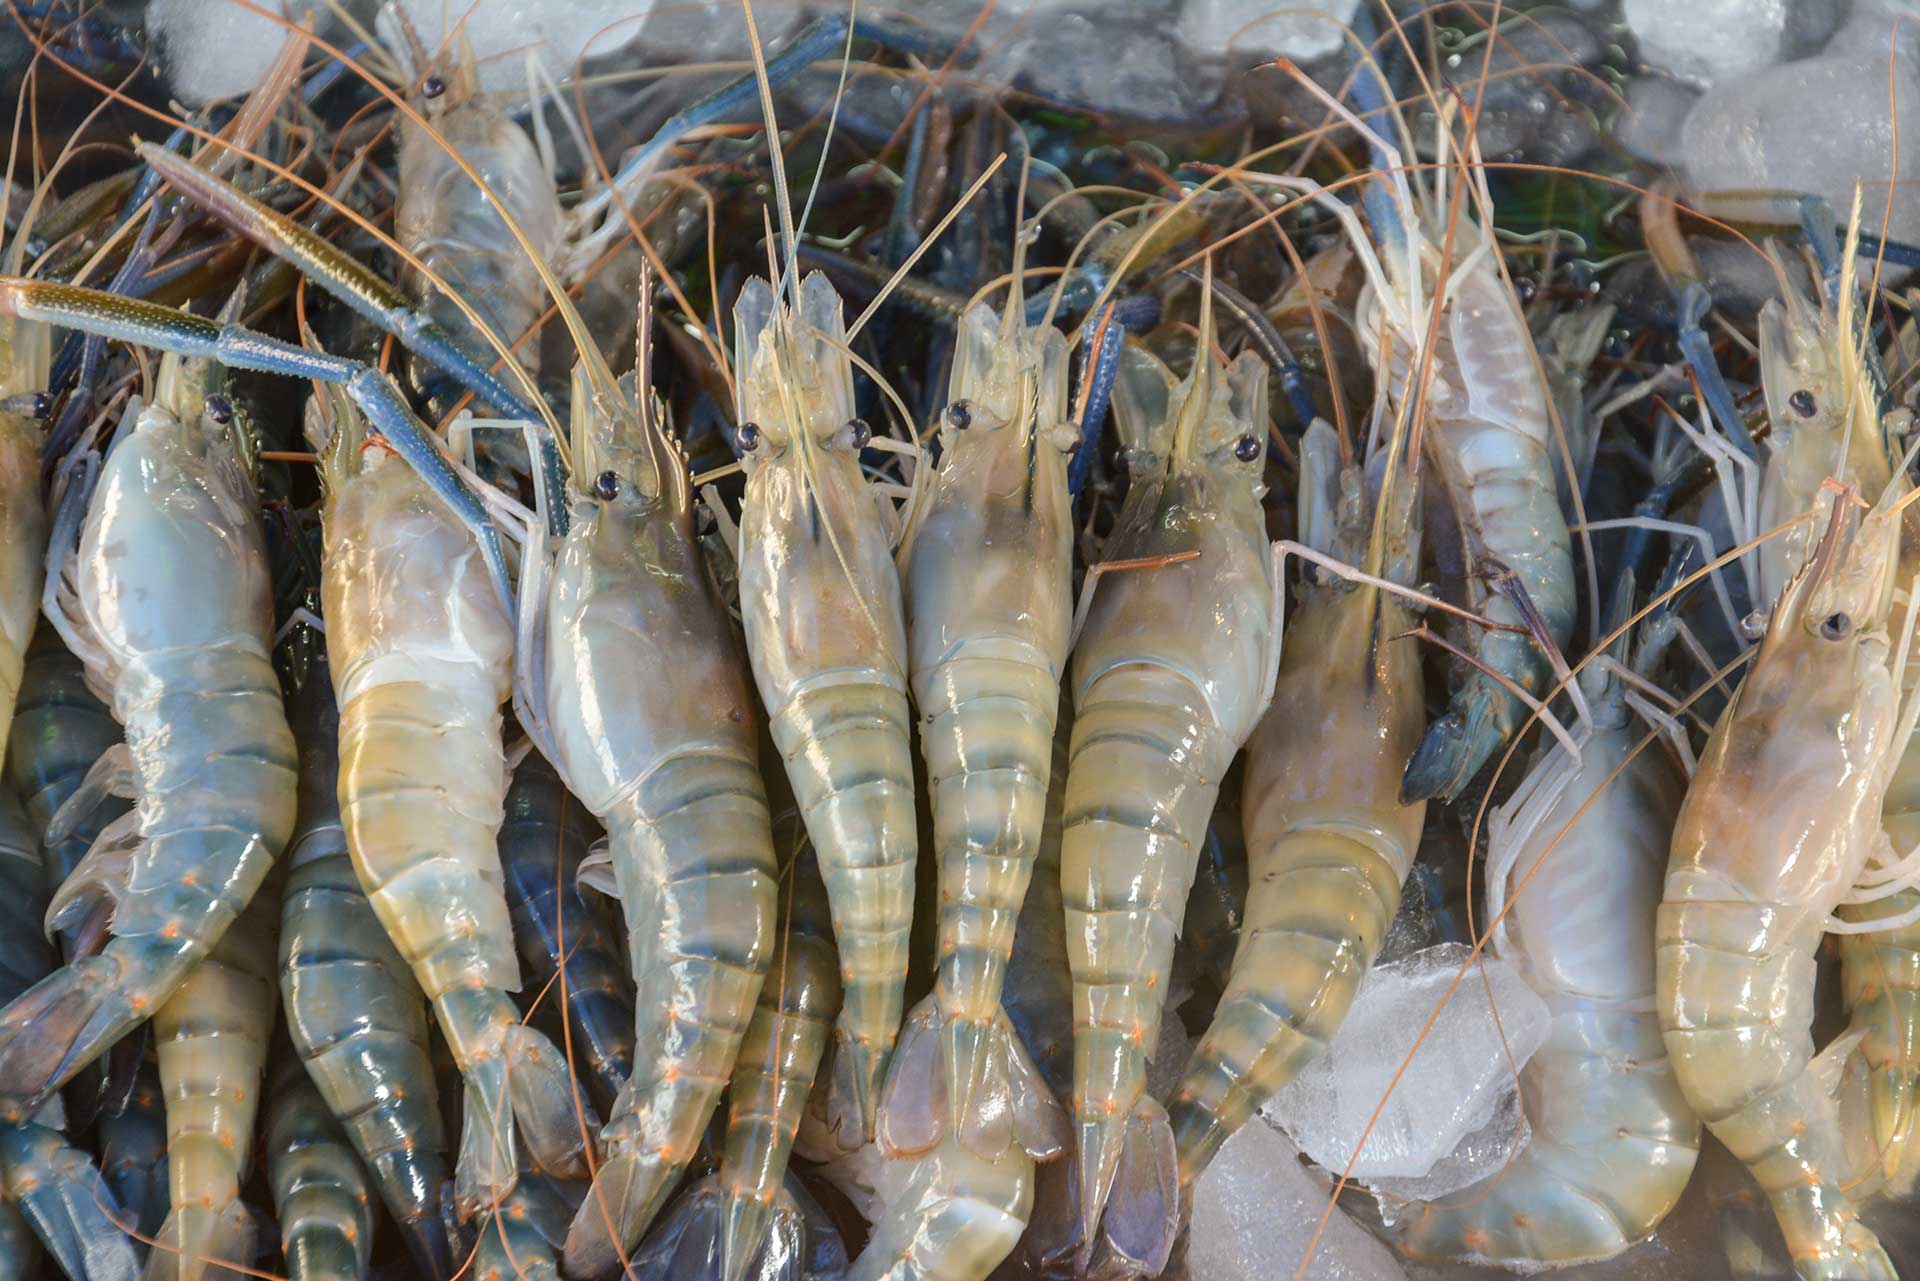 How To Store Fresh Shrimp